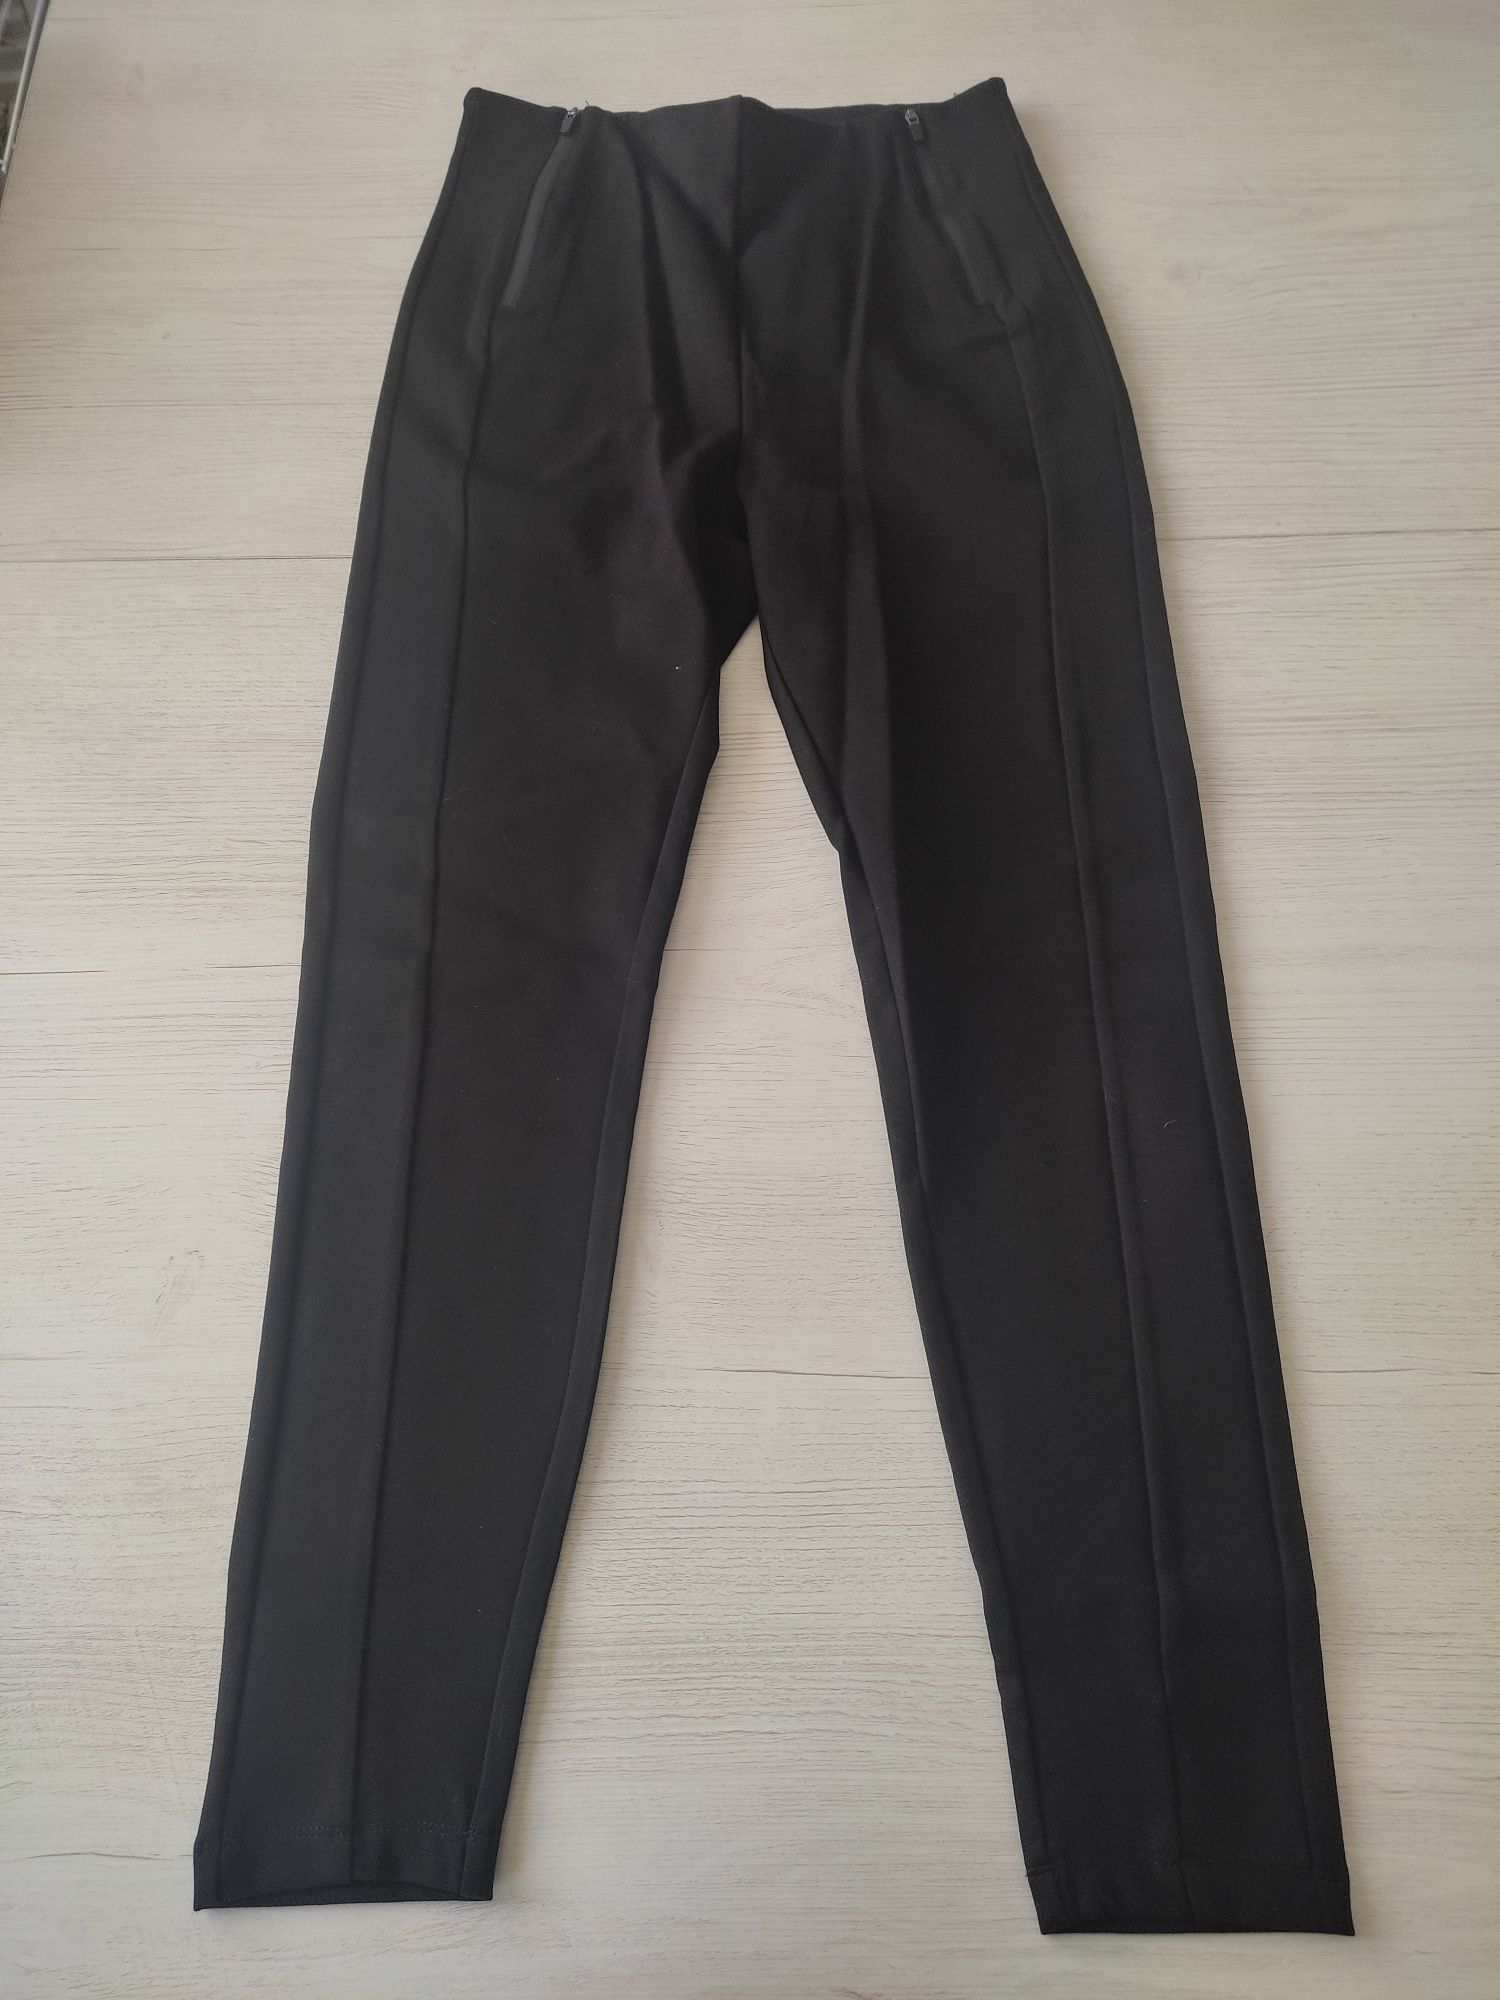 Nowe, damskie spodnie, czarne, rozmiar S, firma Reserved, okazja